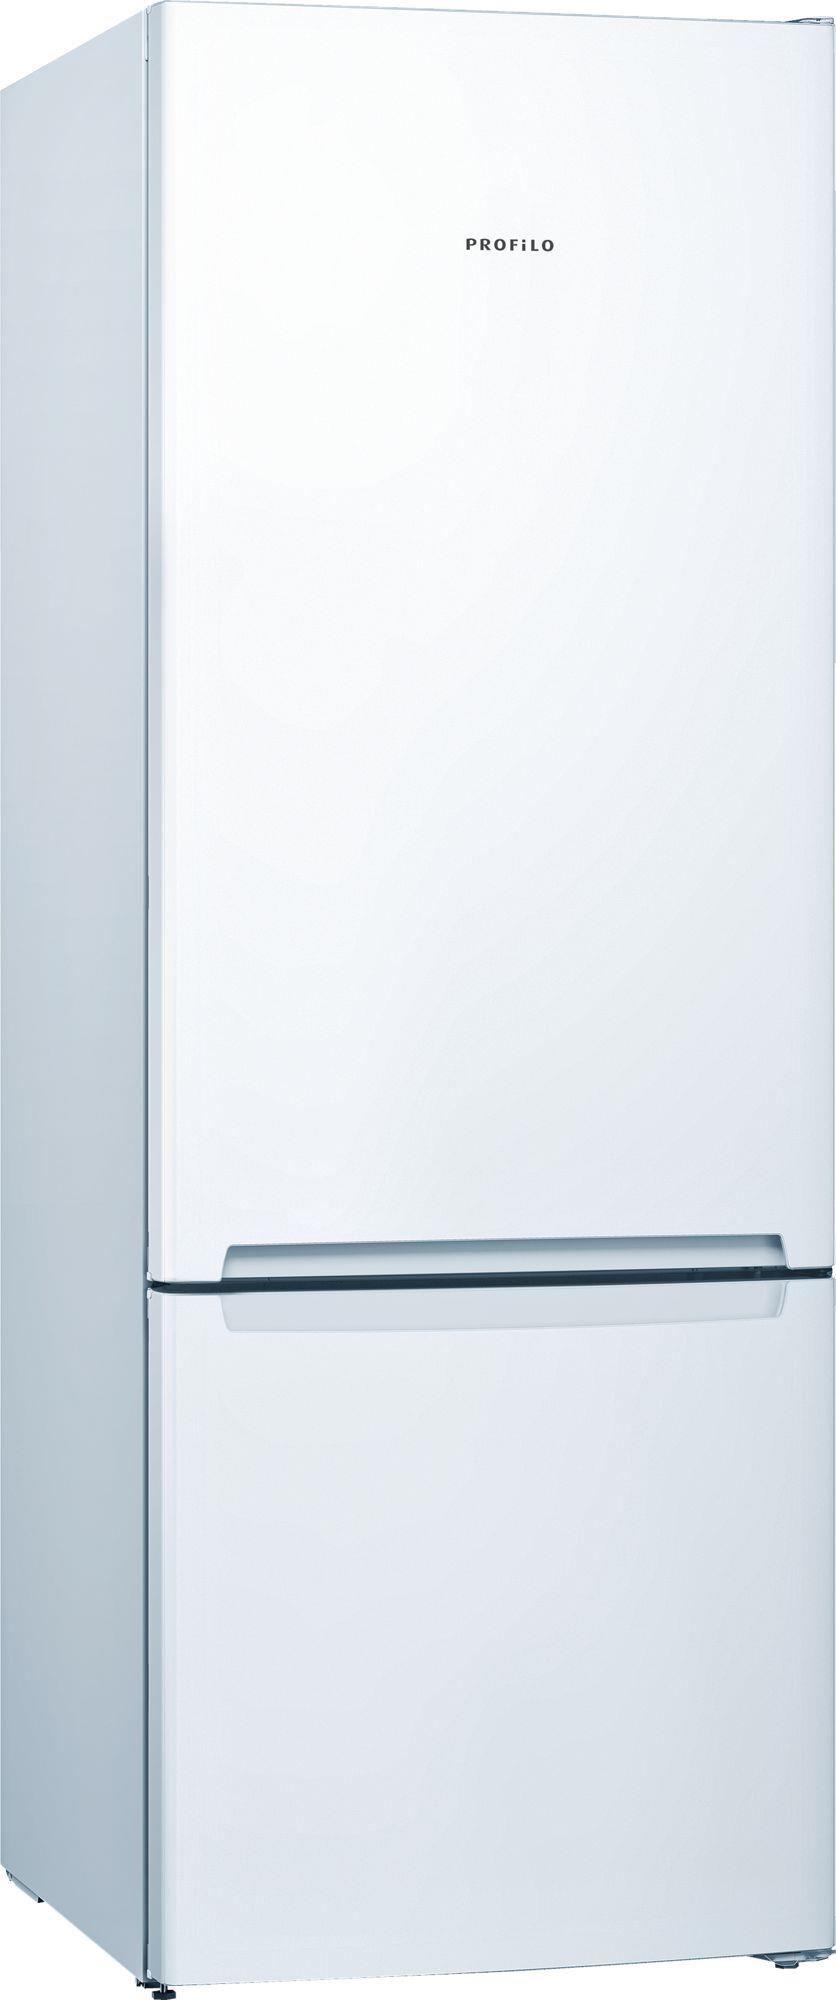 Profilo BD3056W3UN 559 LT A++ Kombi Tipi Buzdolabı - Beyaz